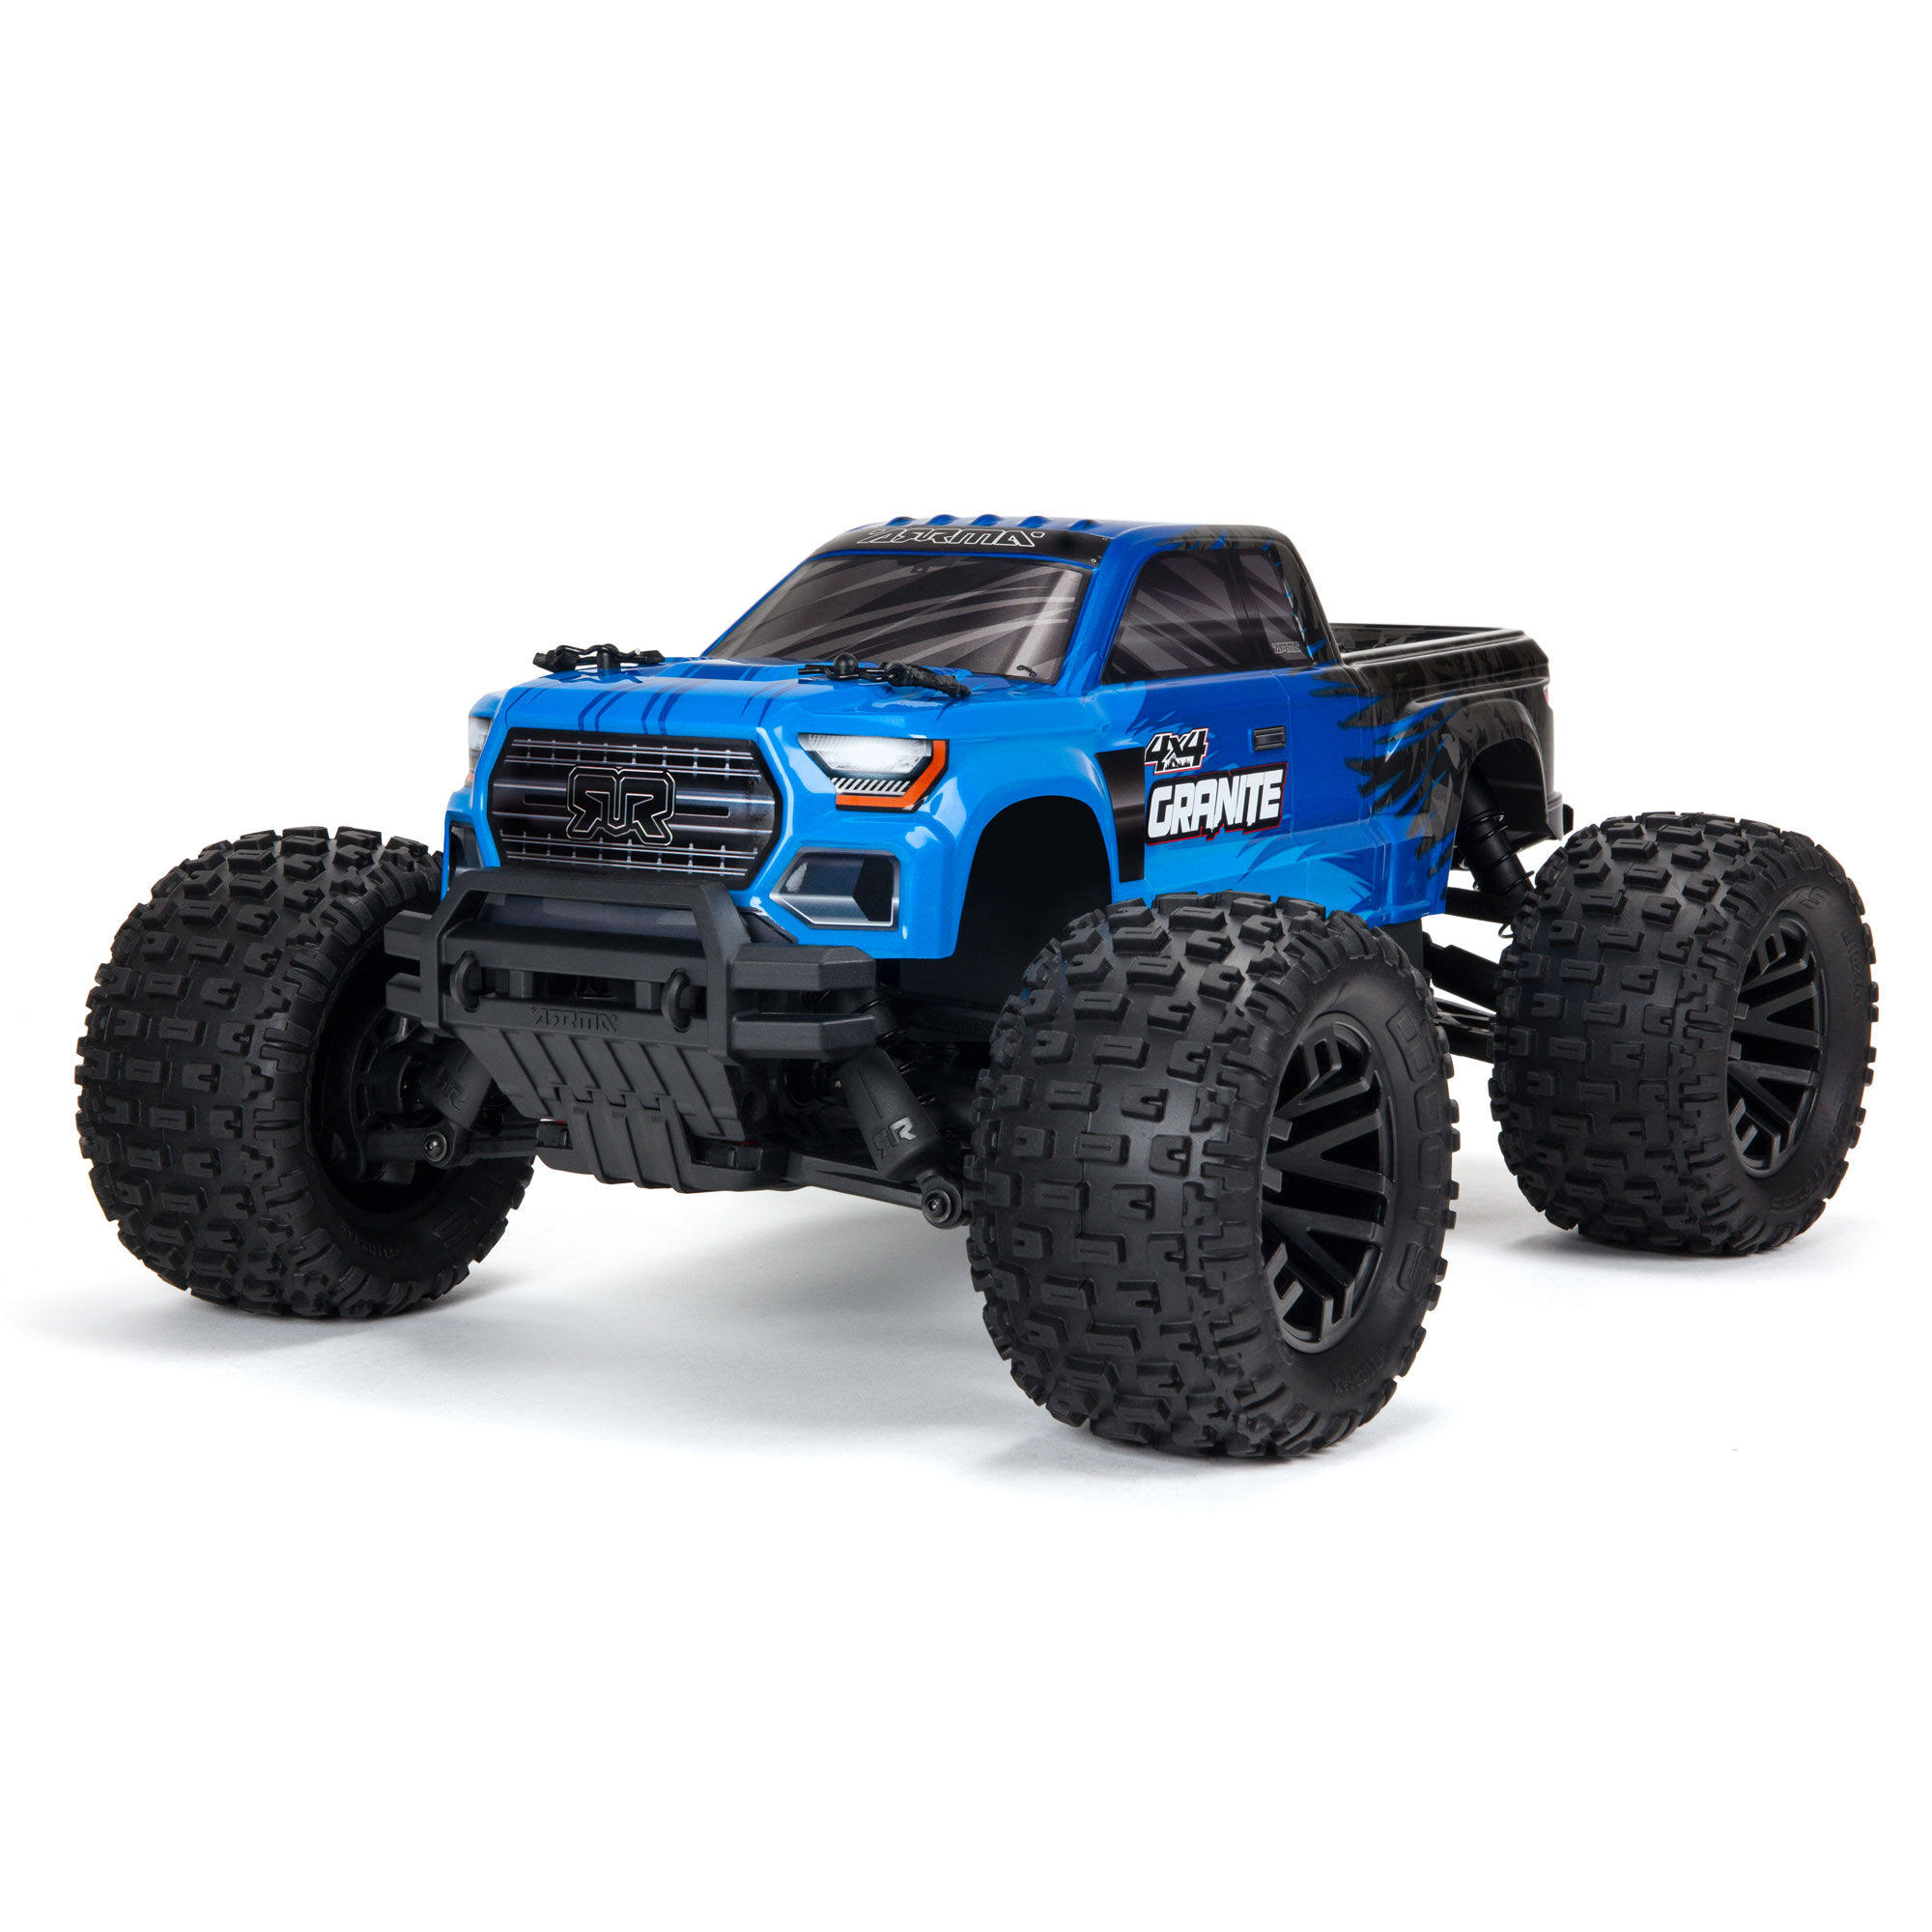 Arrma 1/10 Granite 4x4 V3 Mega 550 Brushed Monster Truck RTR - Blue